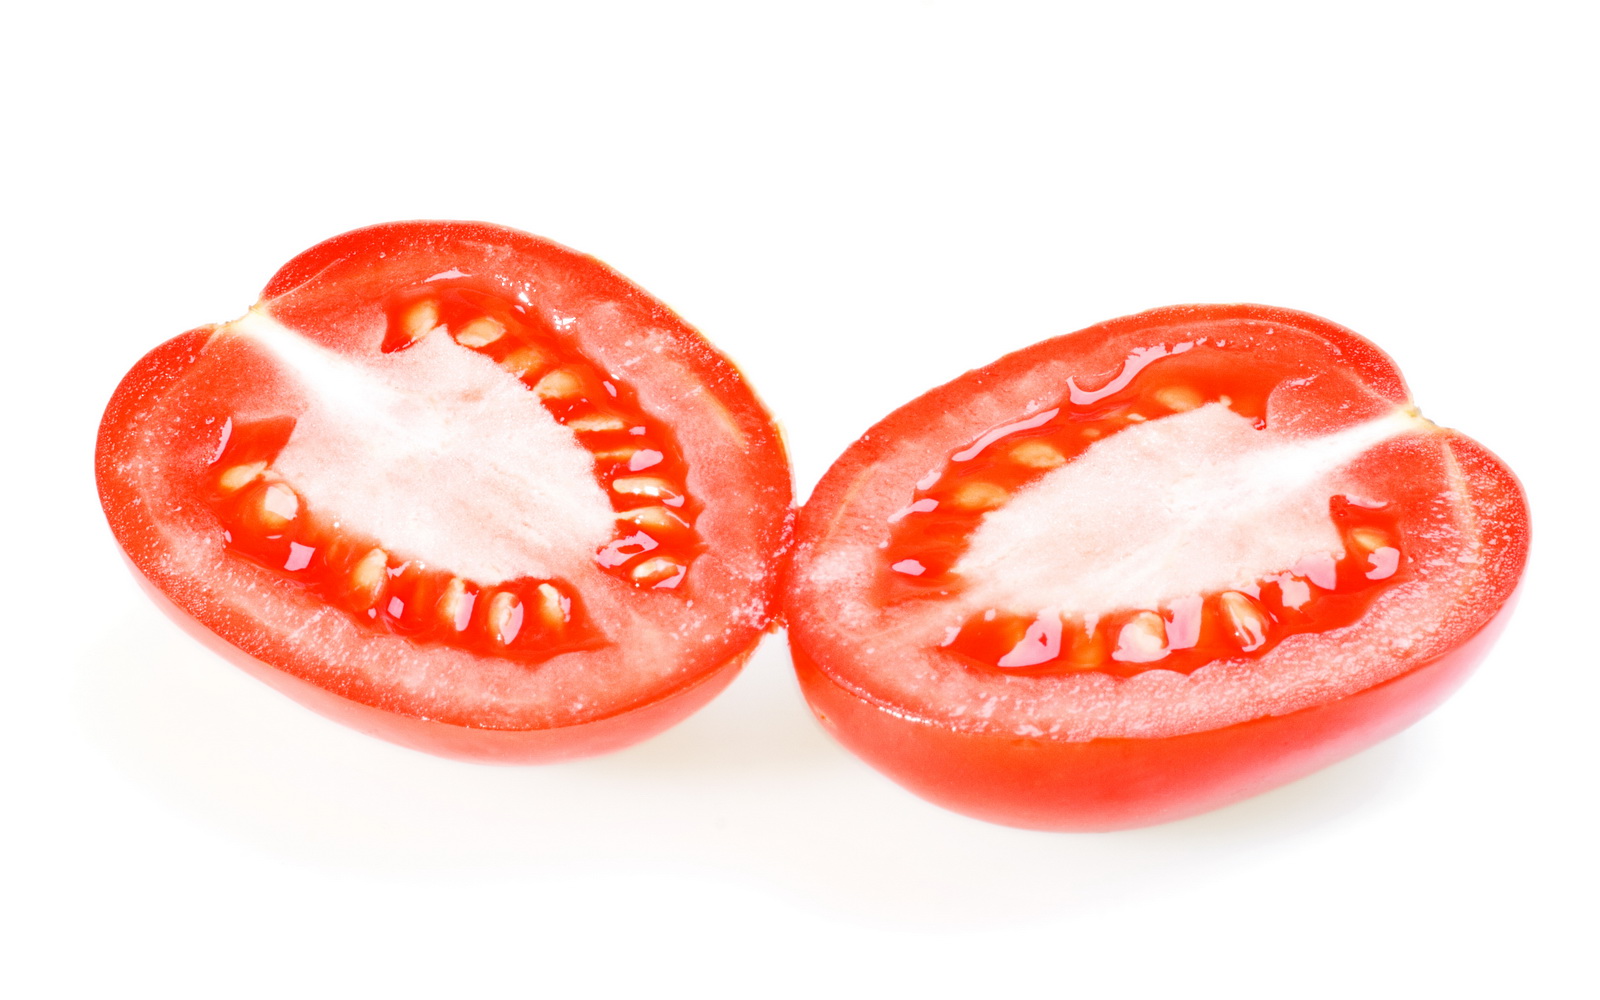 Tomato cut in half photo